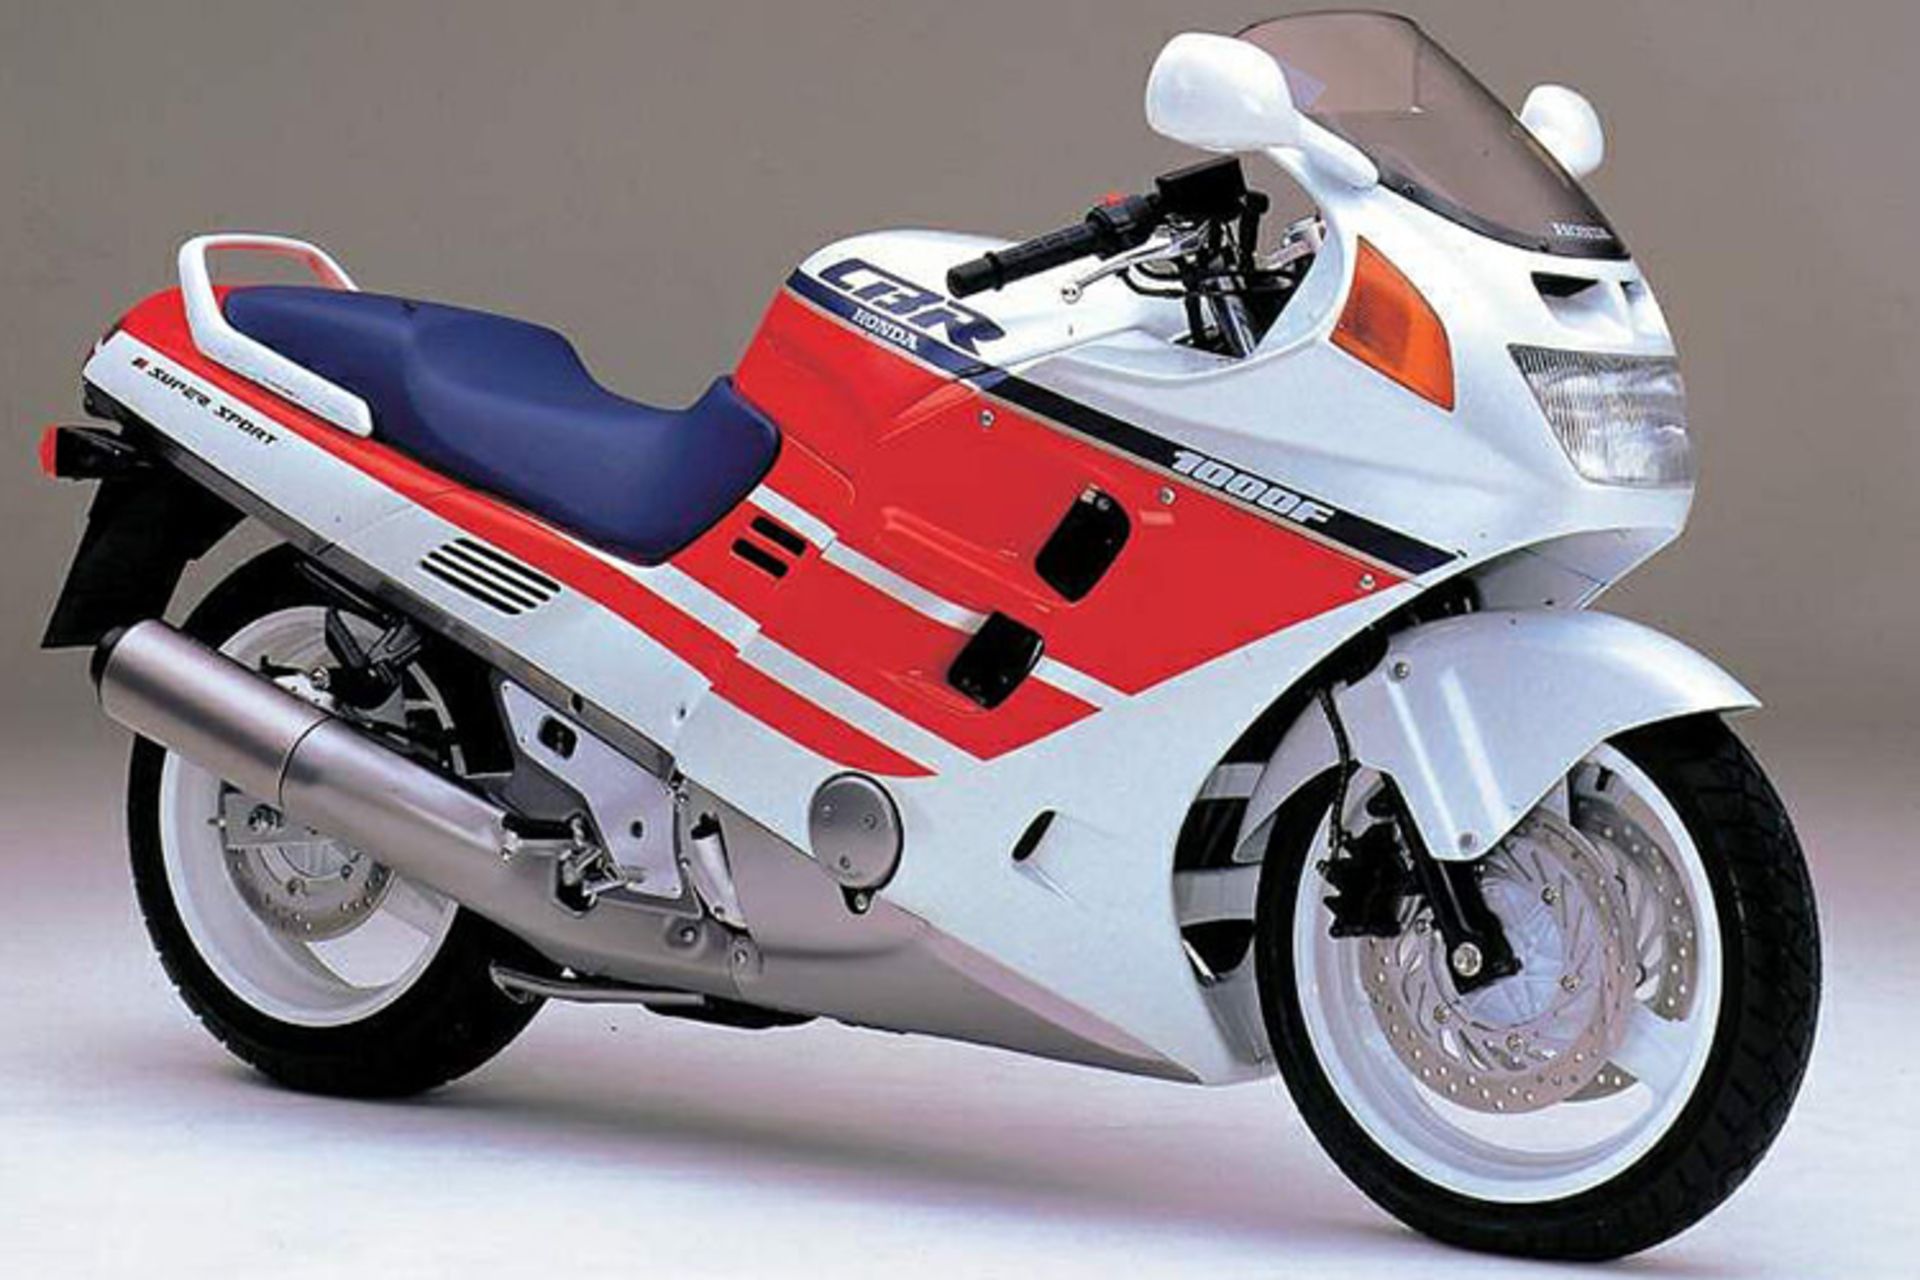 مرجع متخصصين ايران Honda CBR1000F